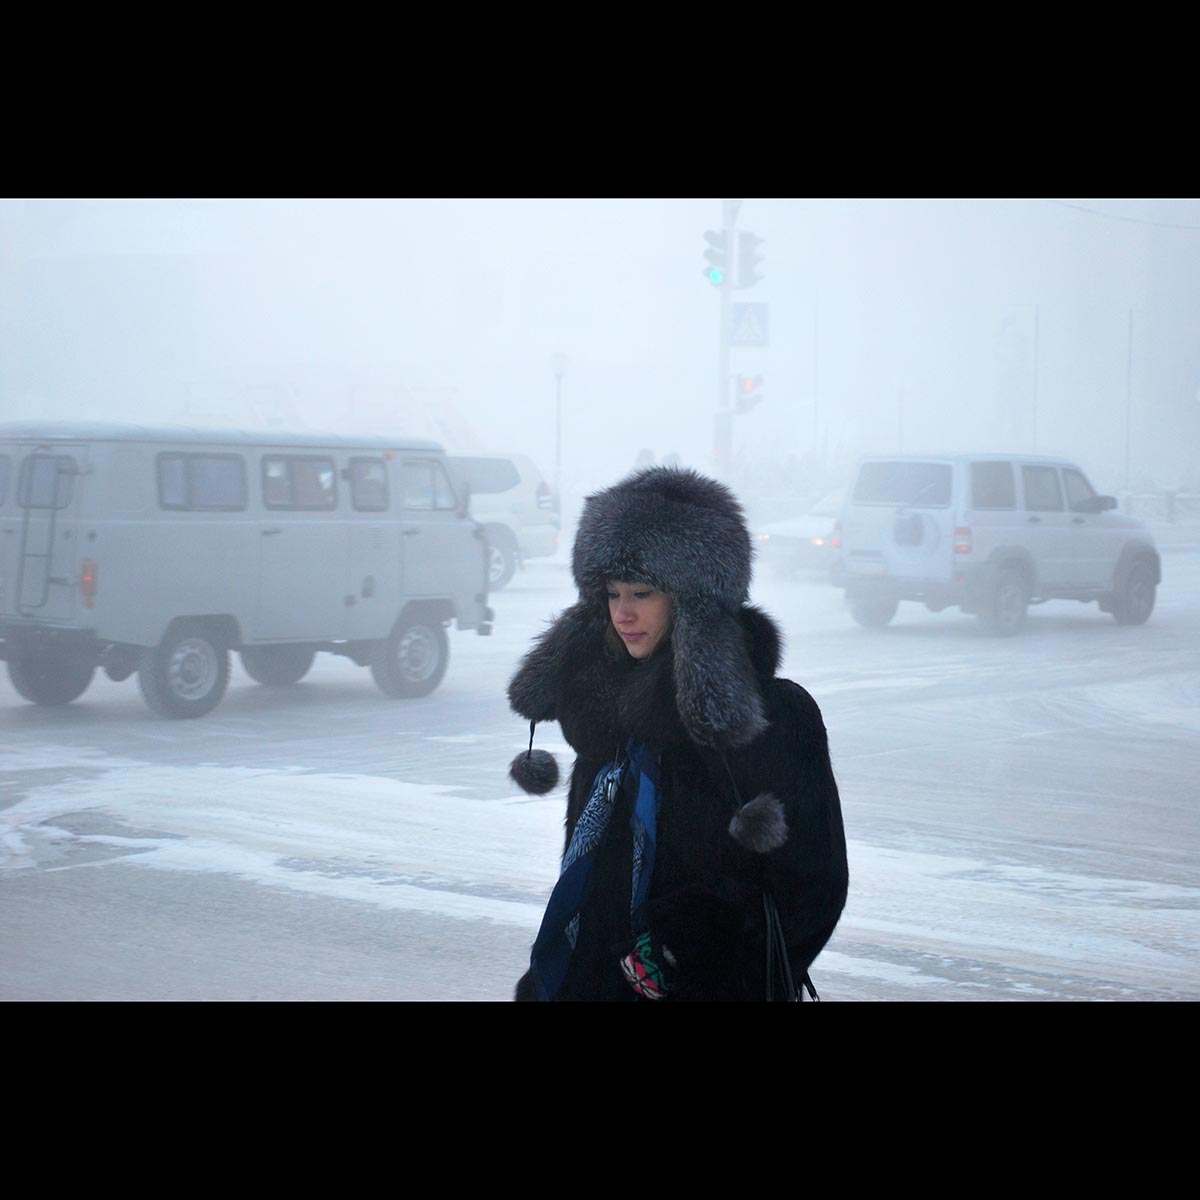 Küresel ısınma Rusya’nın soğuk bölgelerine daha hızlı etki edebilir